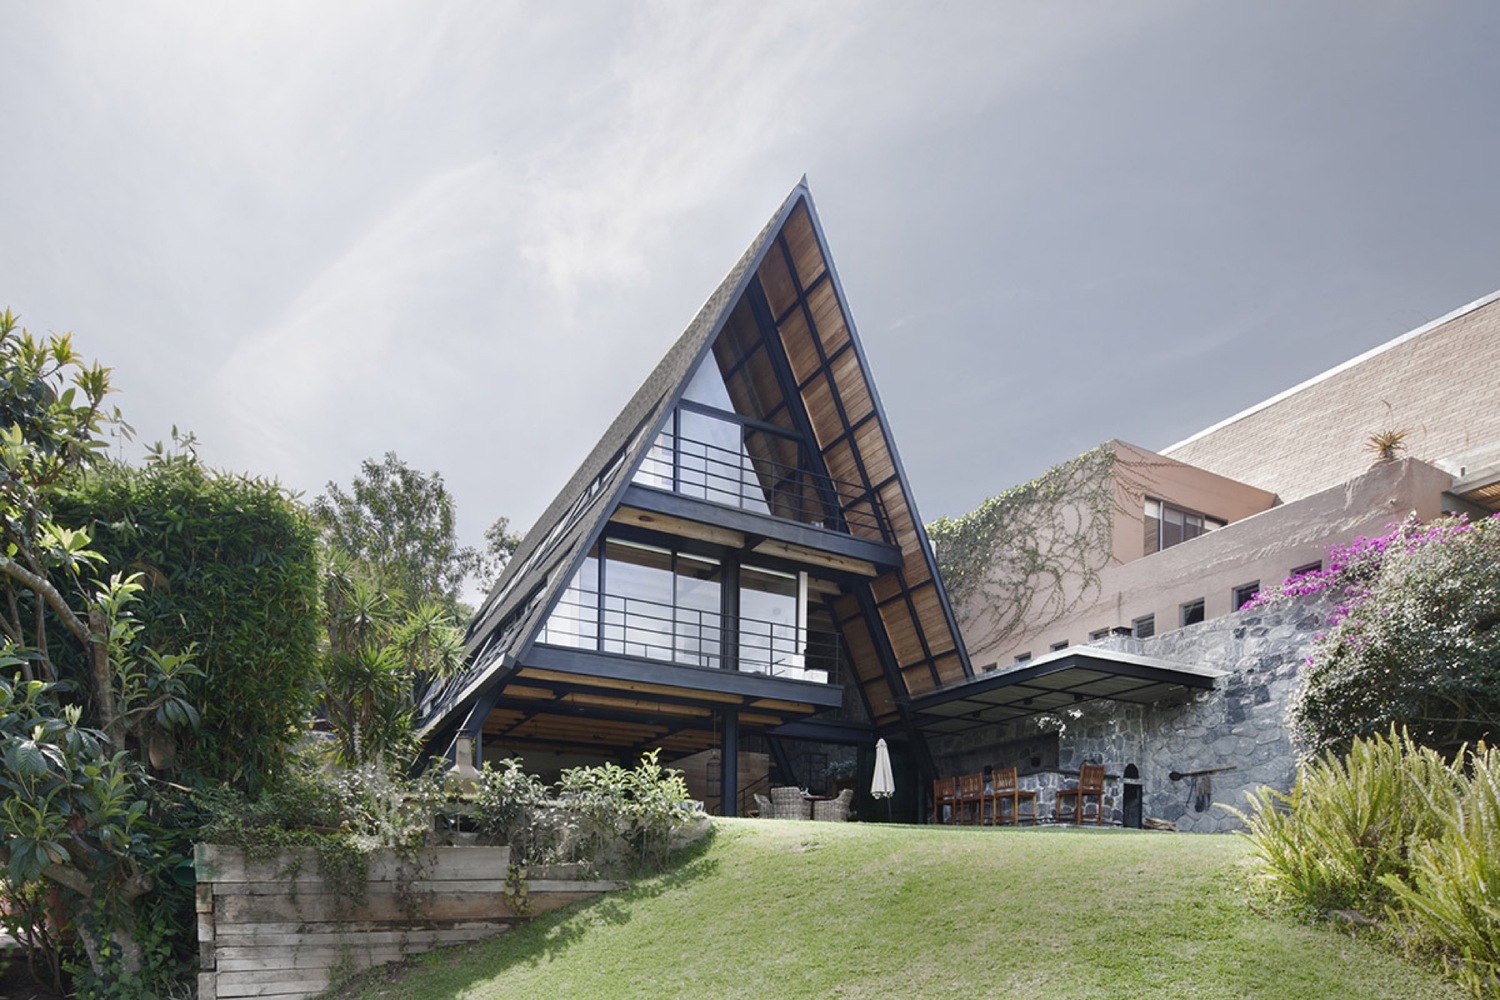 Casa moderna de dos pisos en México, analizamos un diseño único con  interiores contemporáneos tradicionales - Mundo Fachadas